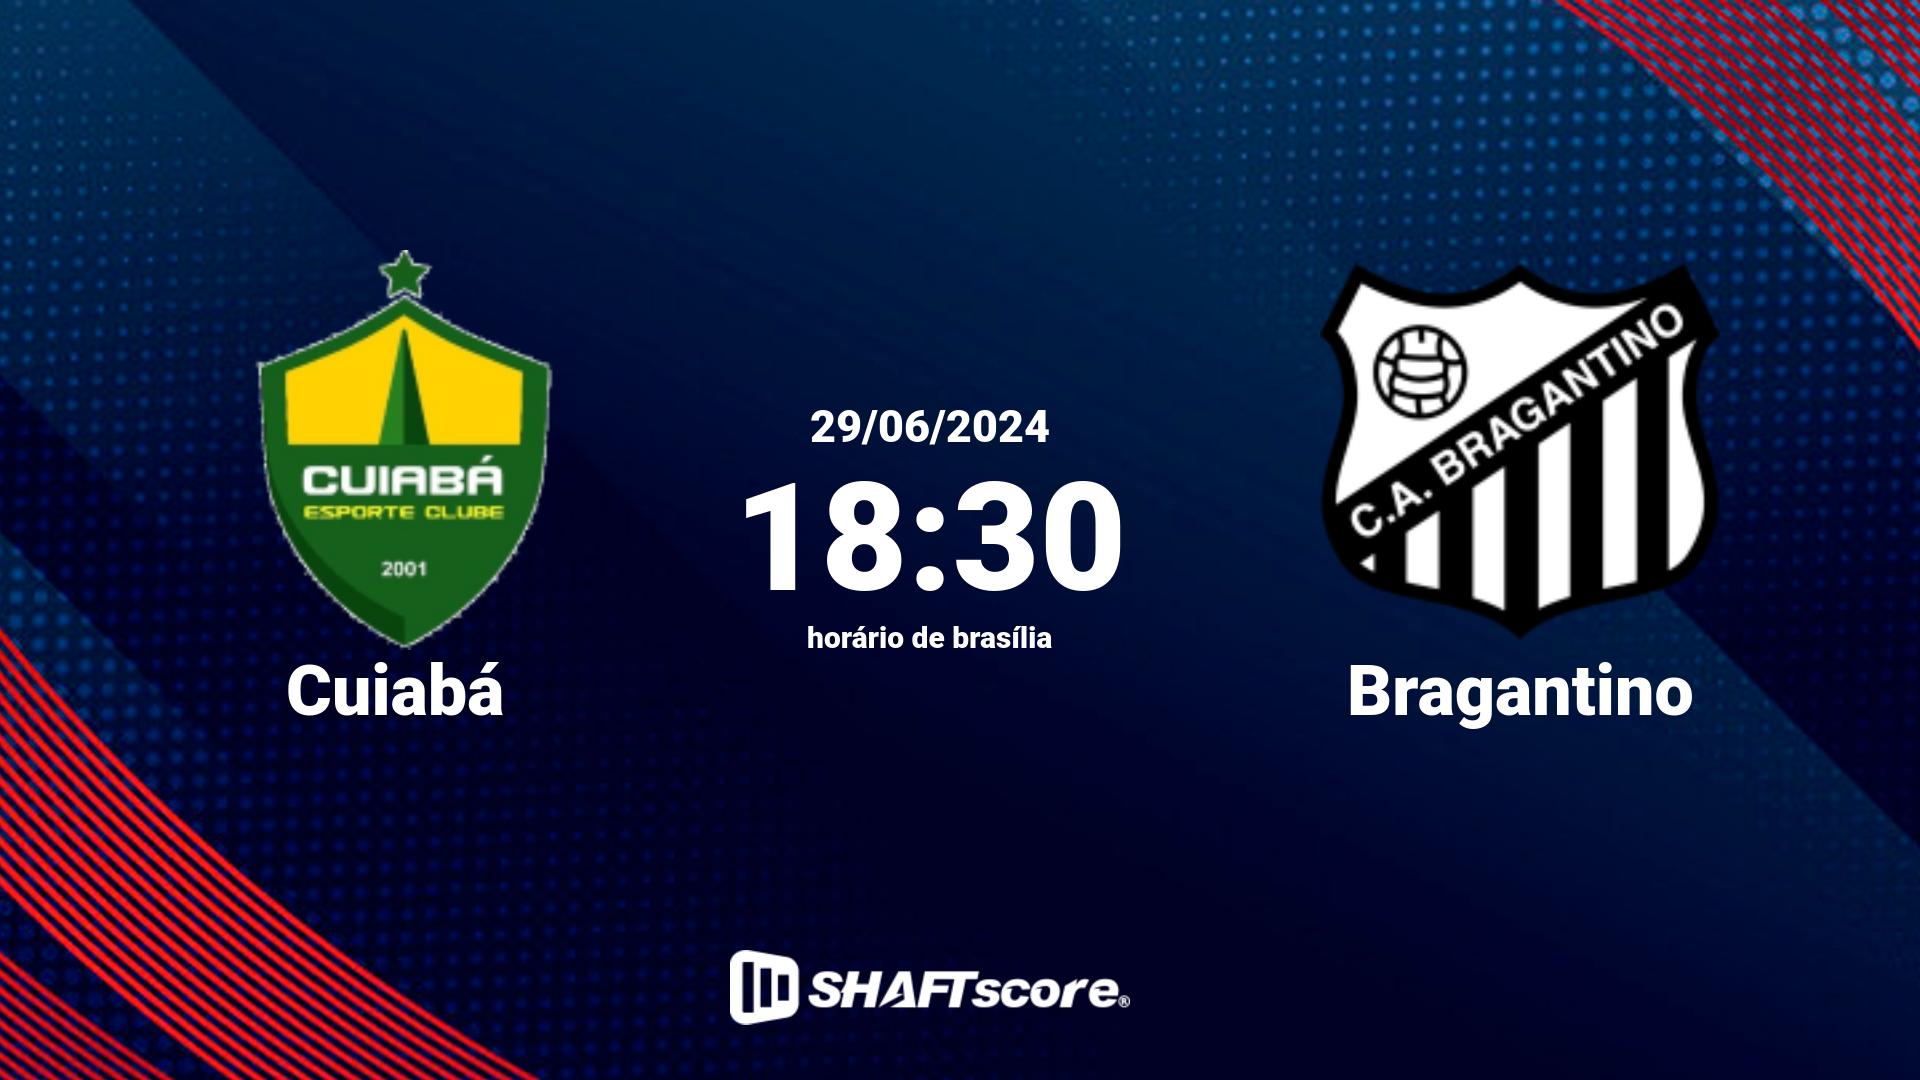 Estatísticas do jogo Cuiabá vs Bragantino 29.06 18:30